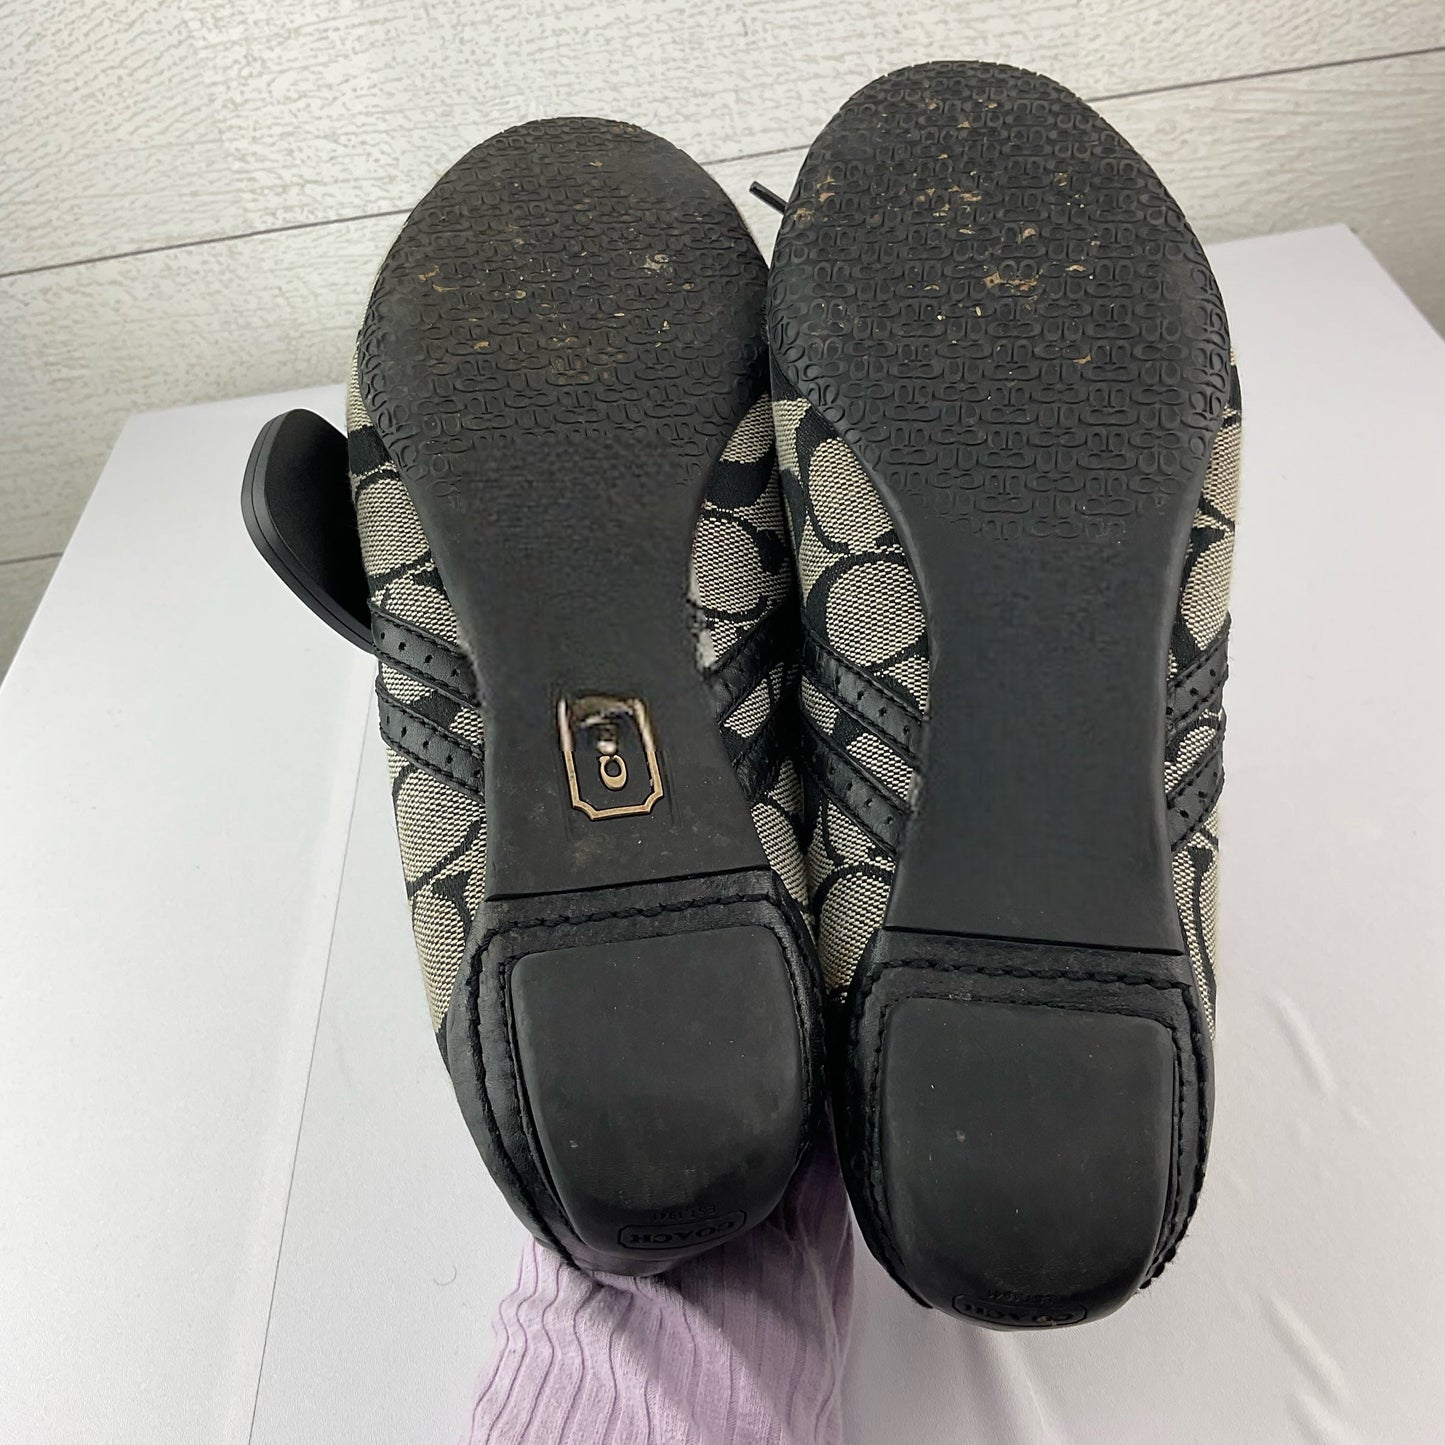 Black & Cream Shoes Flats Coach, Size 8